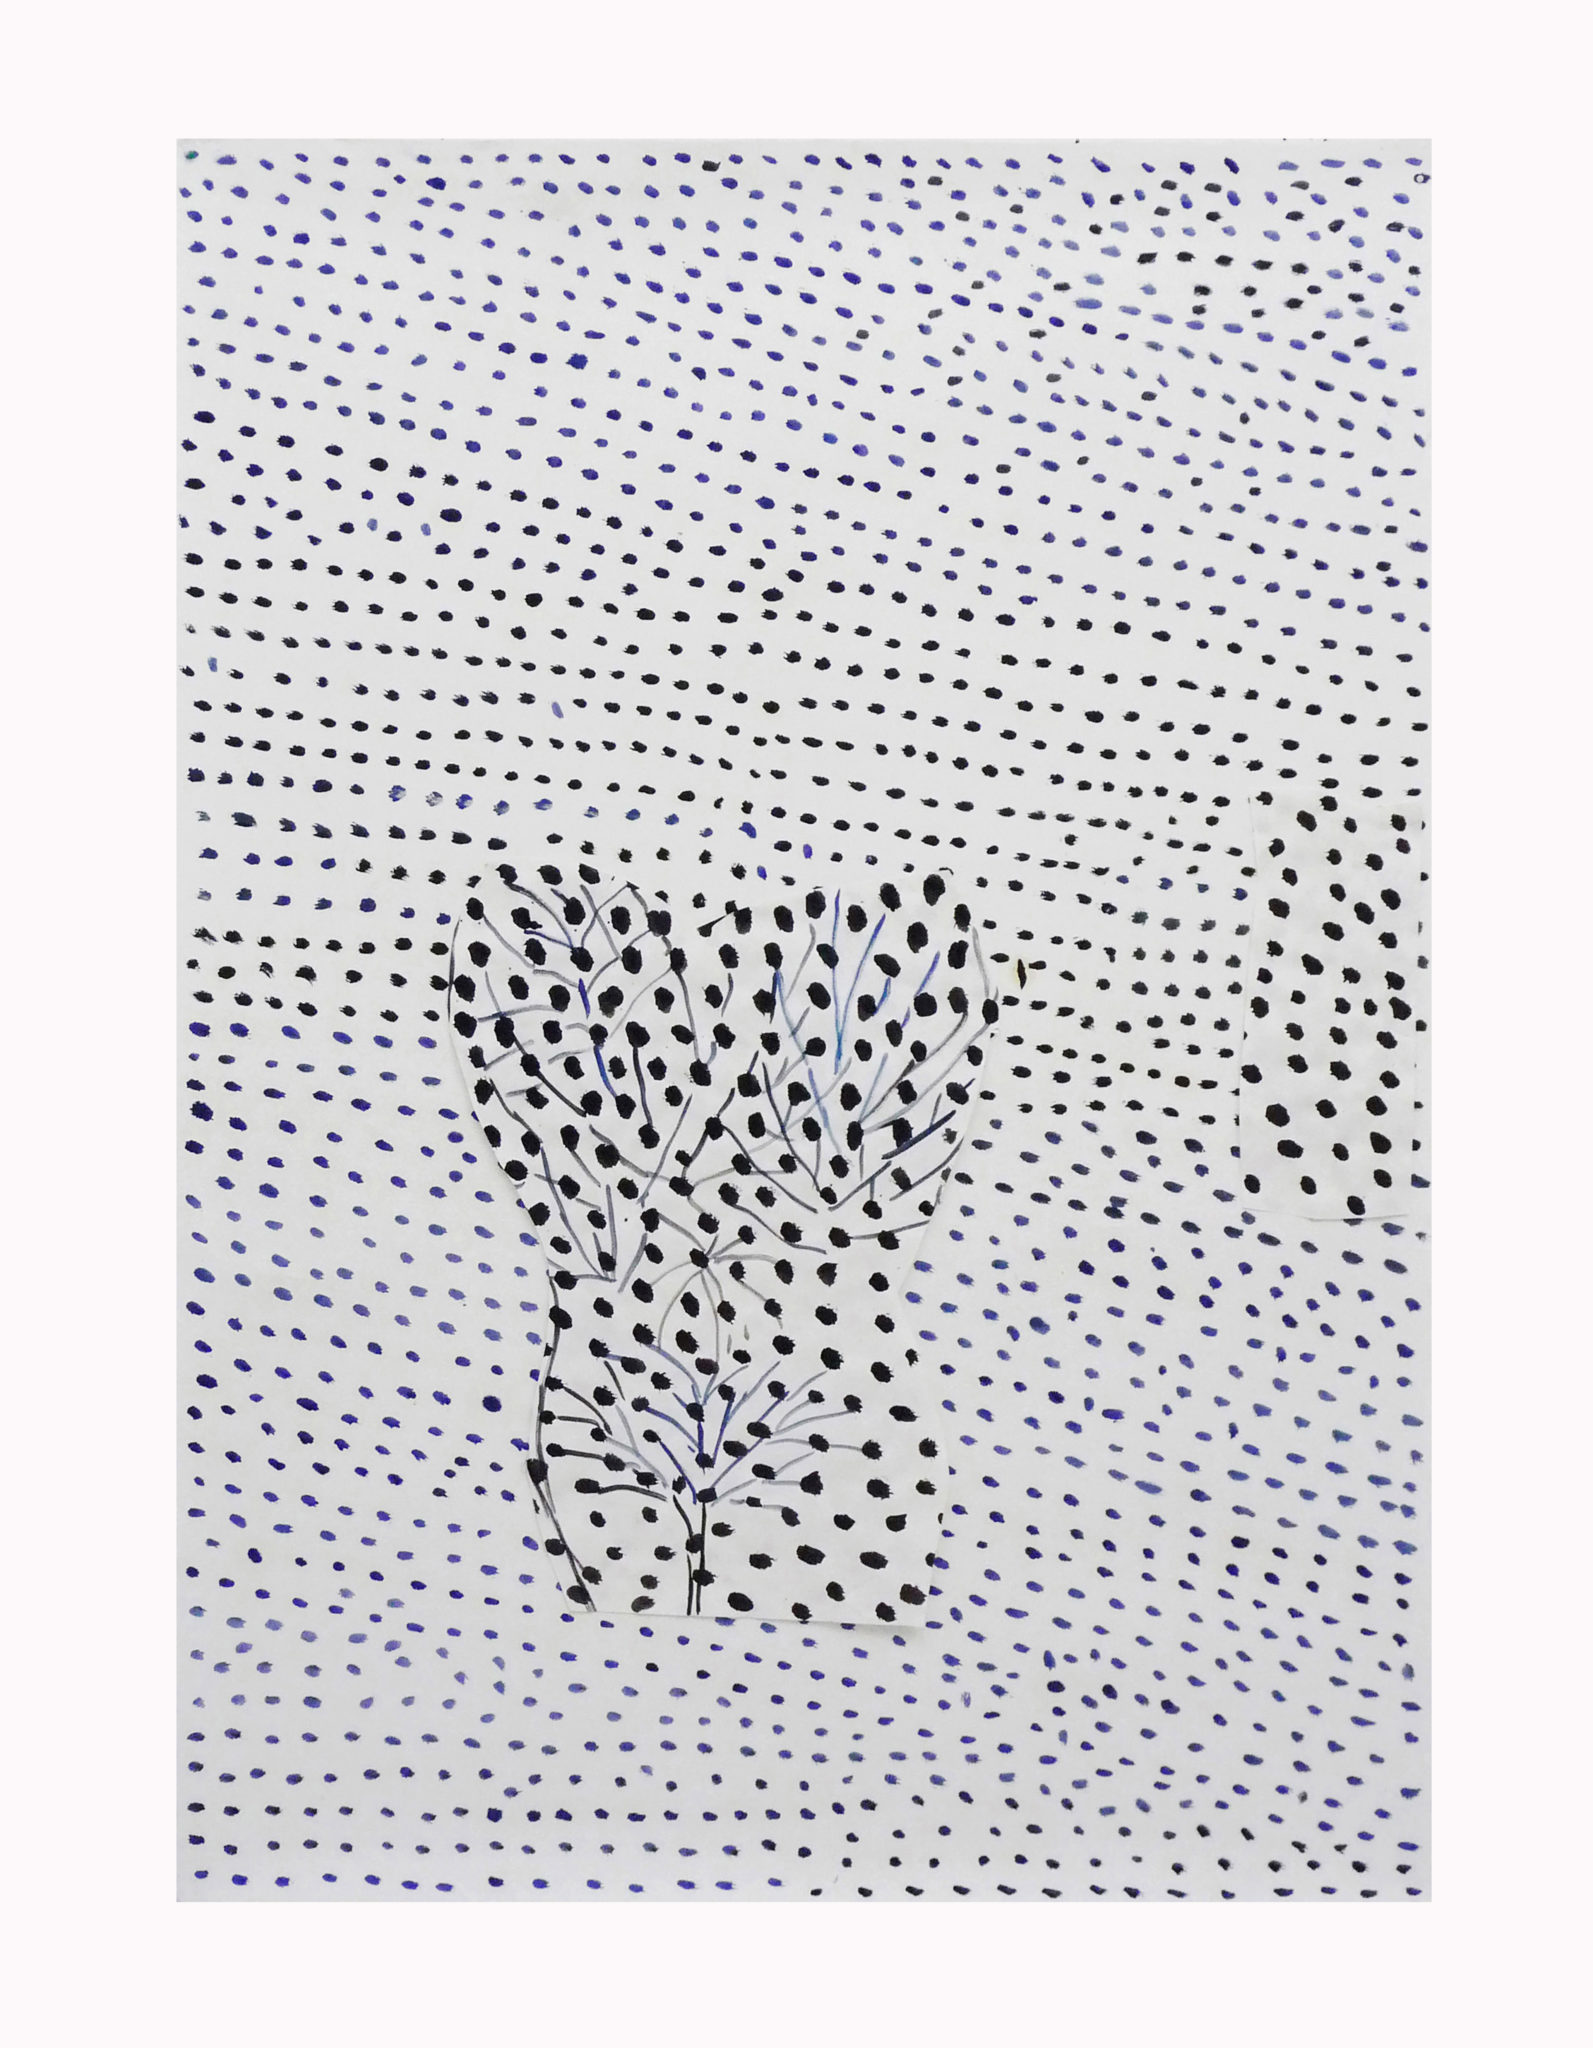 Marie Claude Bugeaud, galerie Berthet-Aittouarès,concrète fiction-2013,collage acryl sur papier chinois,141x101cm